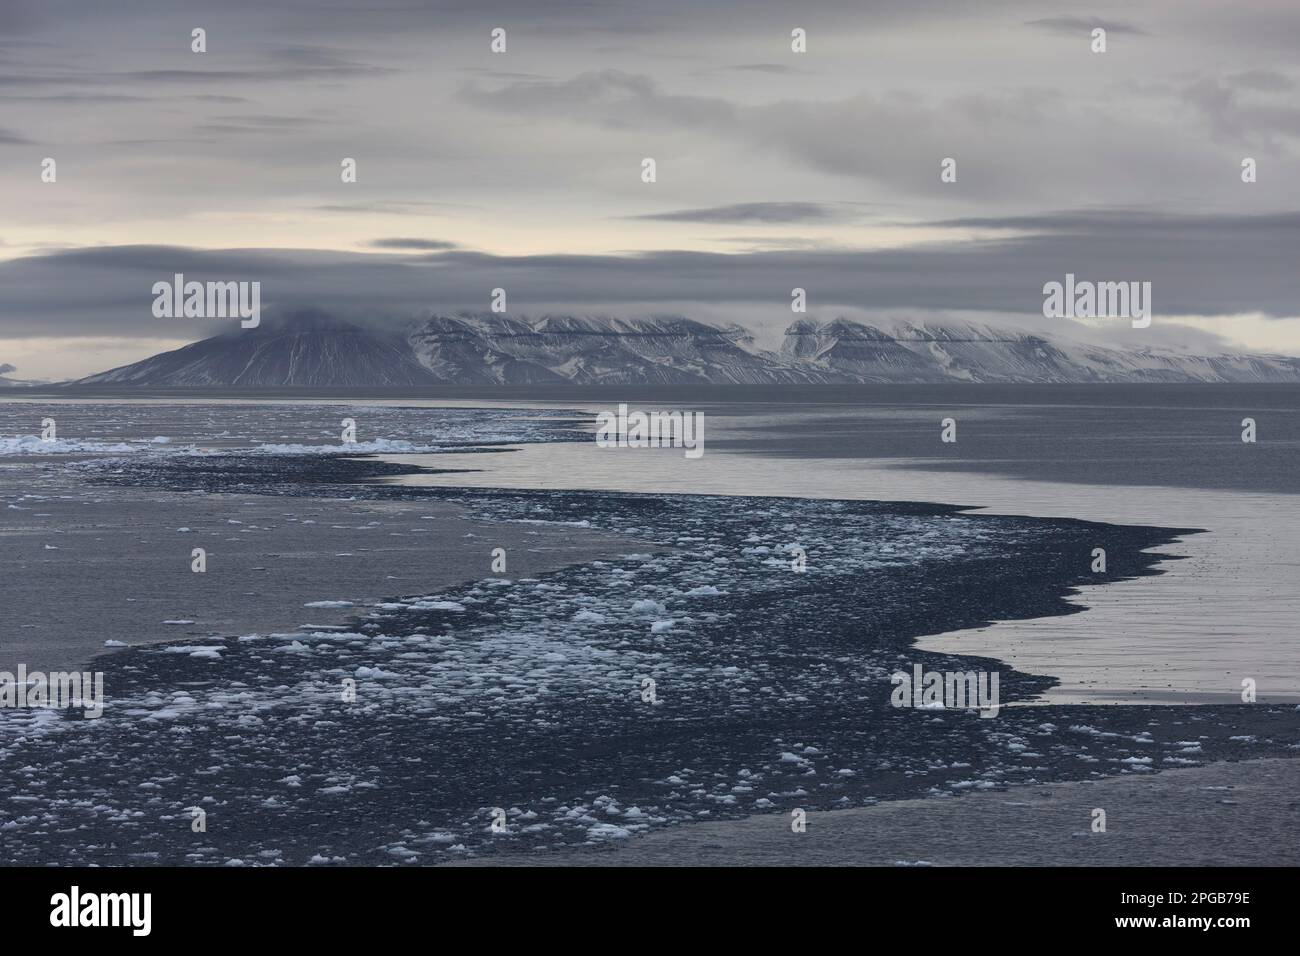 Blocs de glace flottants avec des motifs et des structures dans l'eau, chaîne de montagnes derrière, détroit de Hinlopen, Spitzbergen, Svalbard Banque D'Images